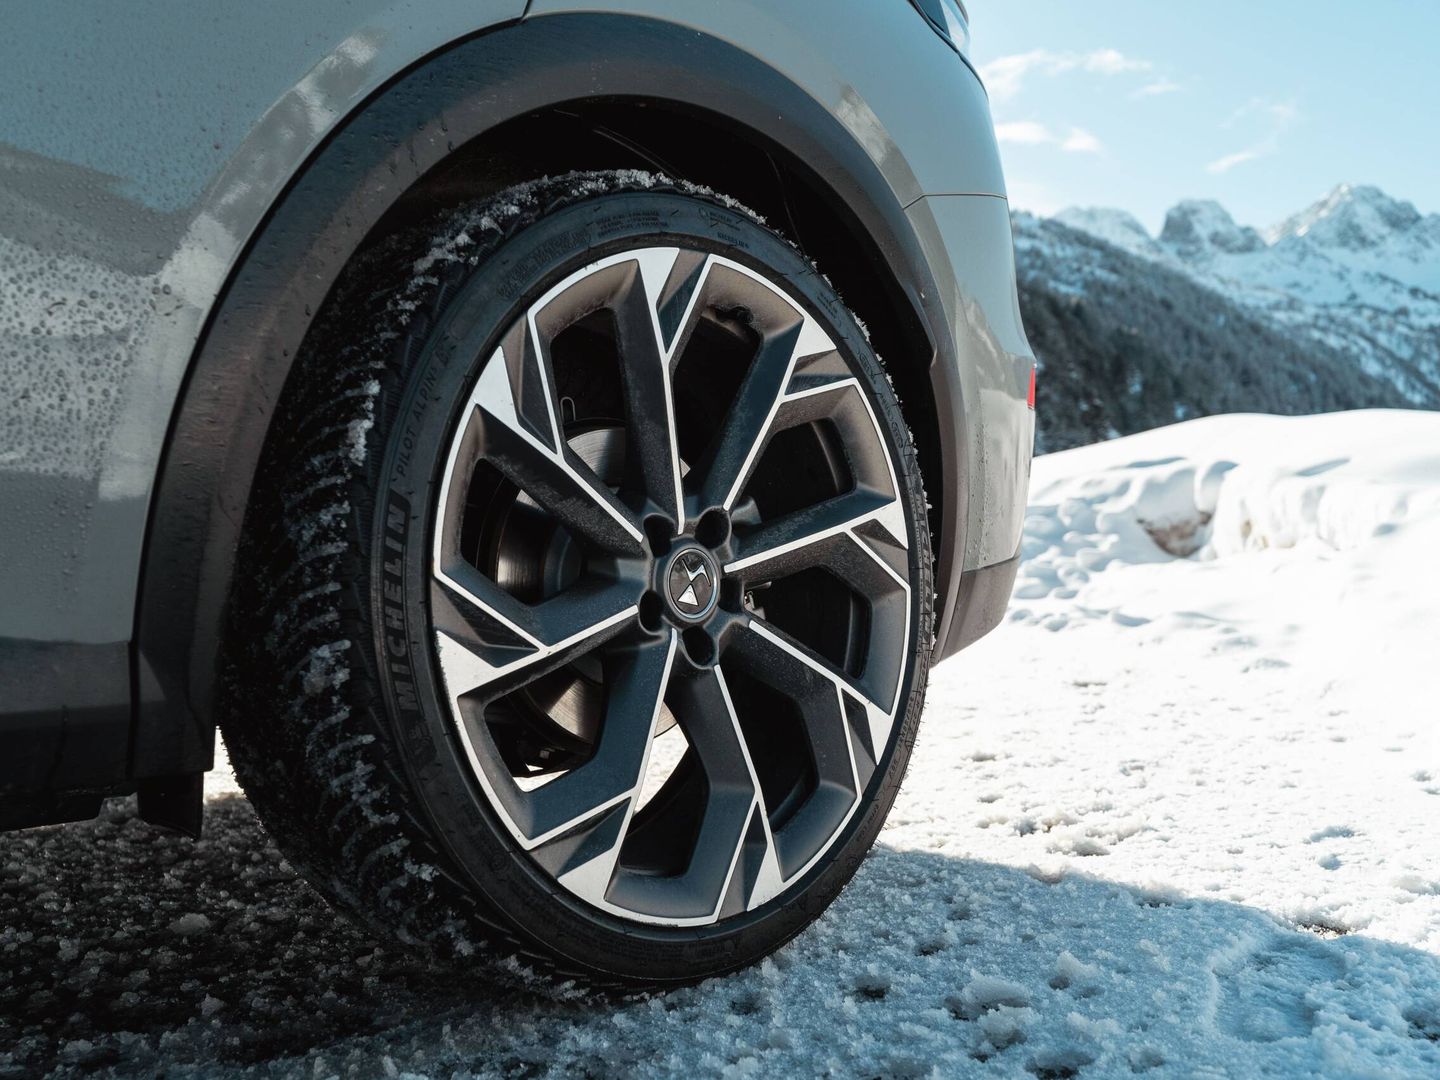 En nuestra prueba el DS7 iba equipado con neumáticos Michelin 'All Season'.